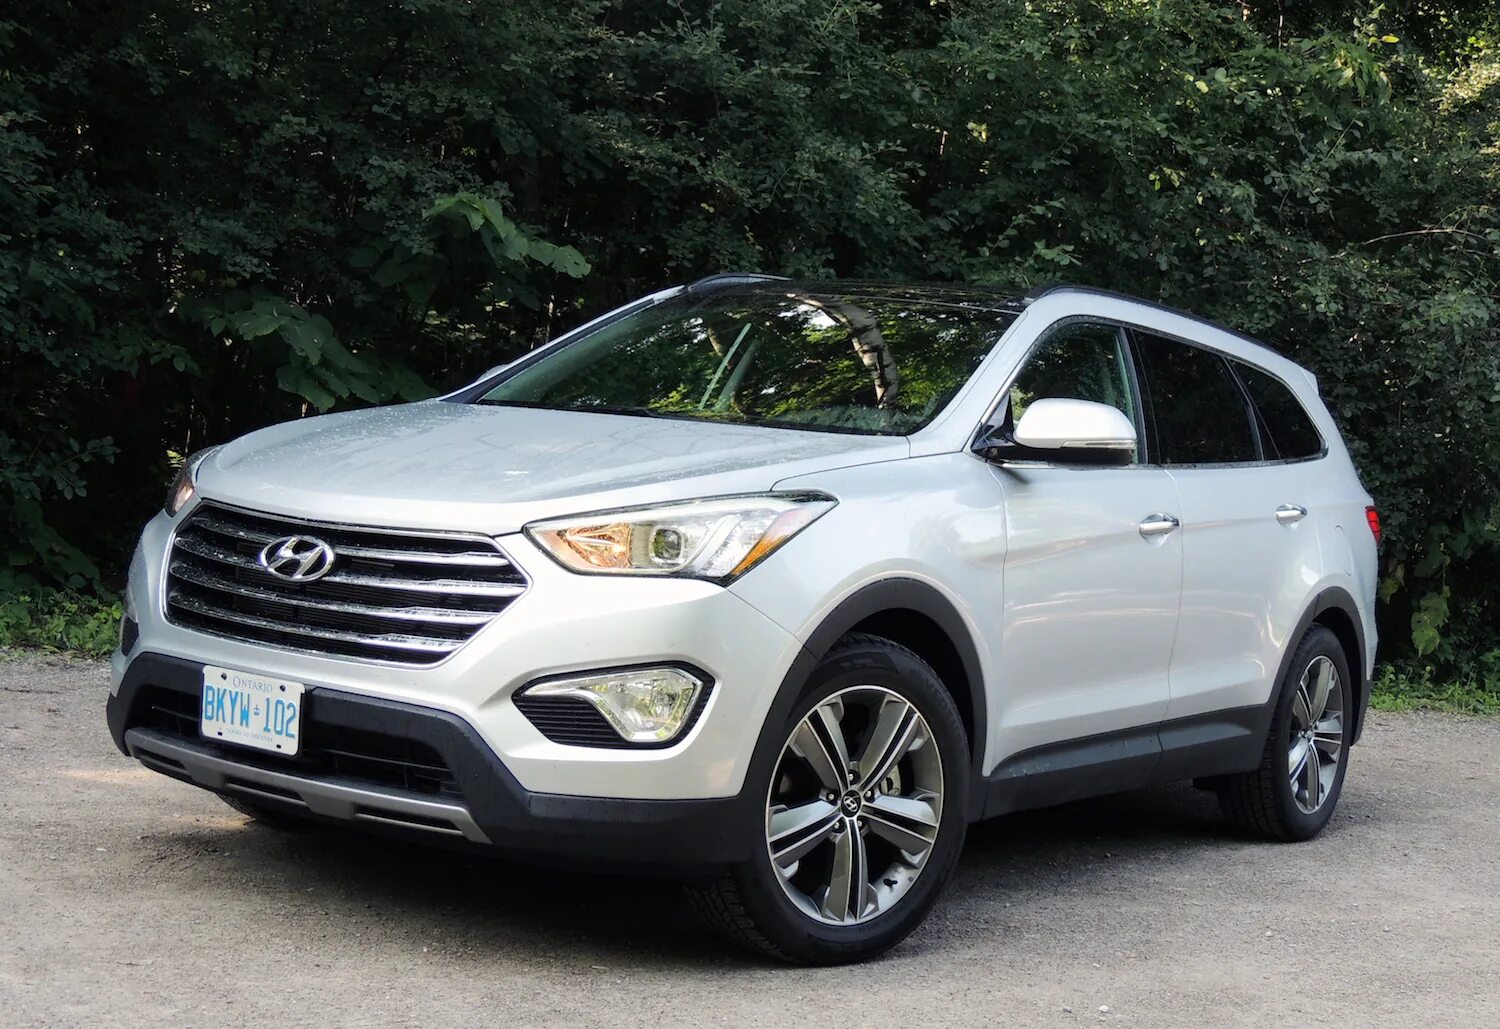 Hyundai Santa Fe 2014. Хендай Санта Фе 2014. Hyundai Santa Fe XL. Hyundai Santa Fe 2014 белый.